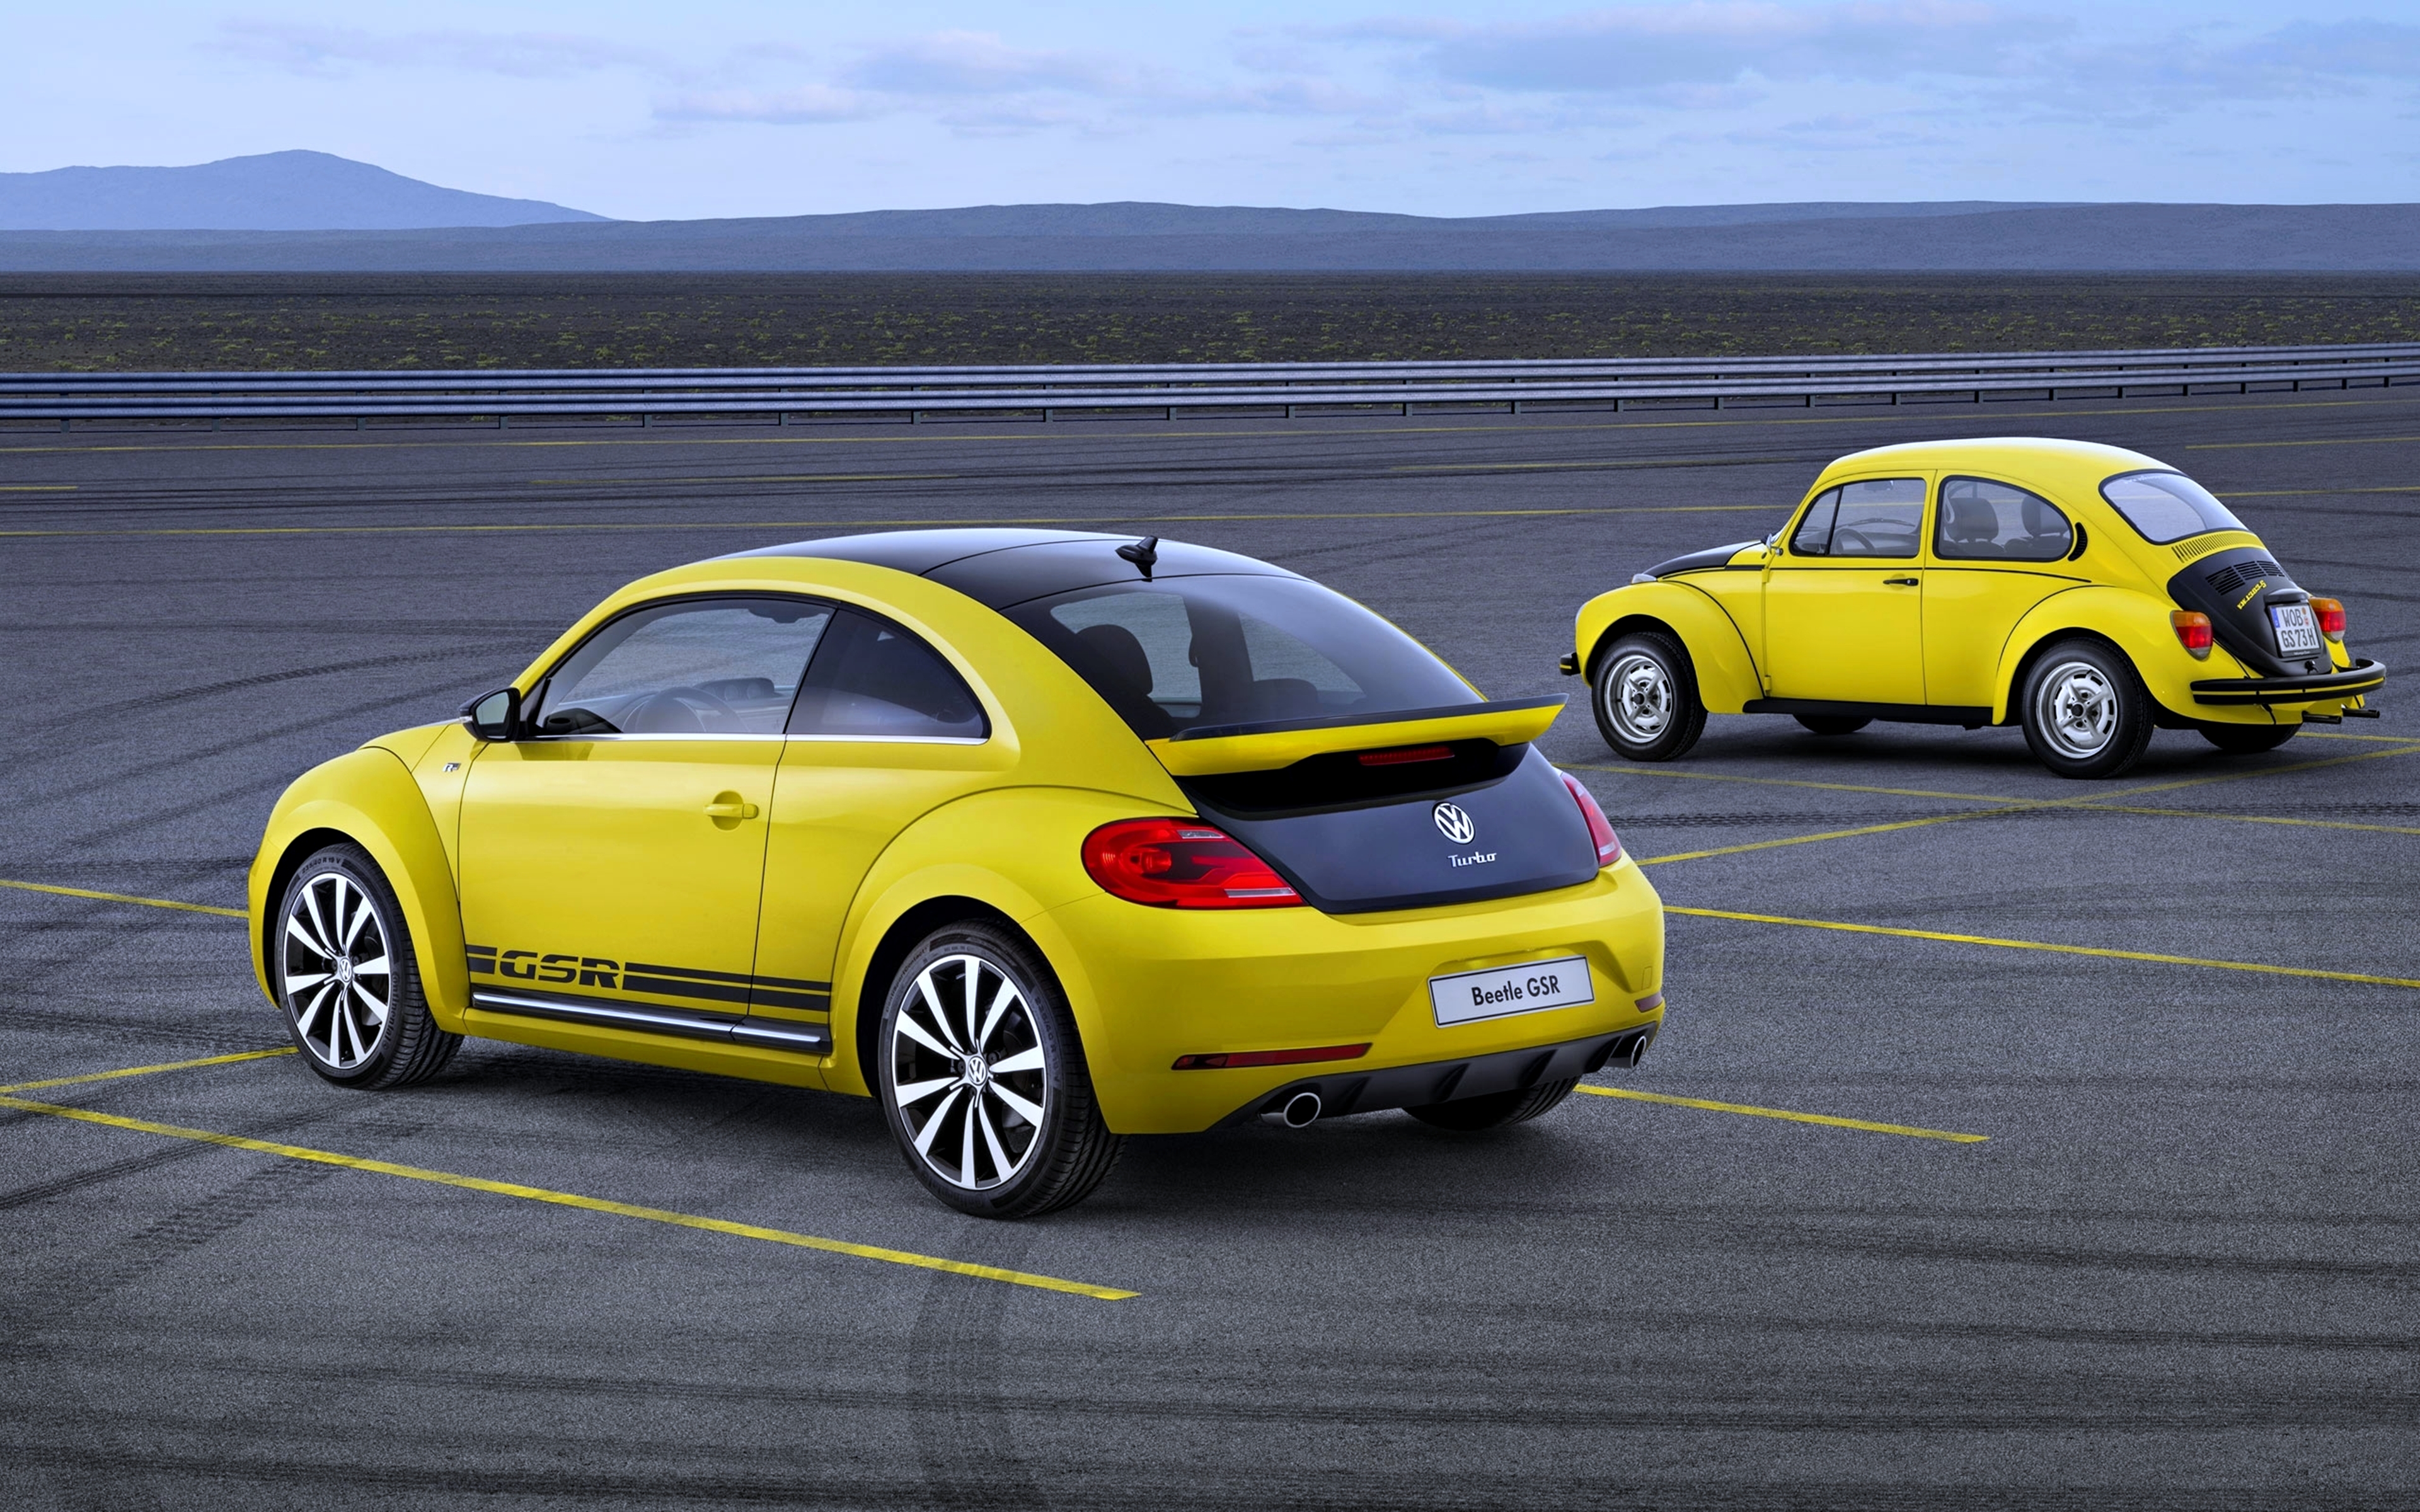 Download mobile wallpaper Volkswagen Beetle Gsr, Volkswagen, Yellow Car, Vehicles, Car for free.